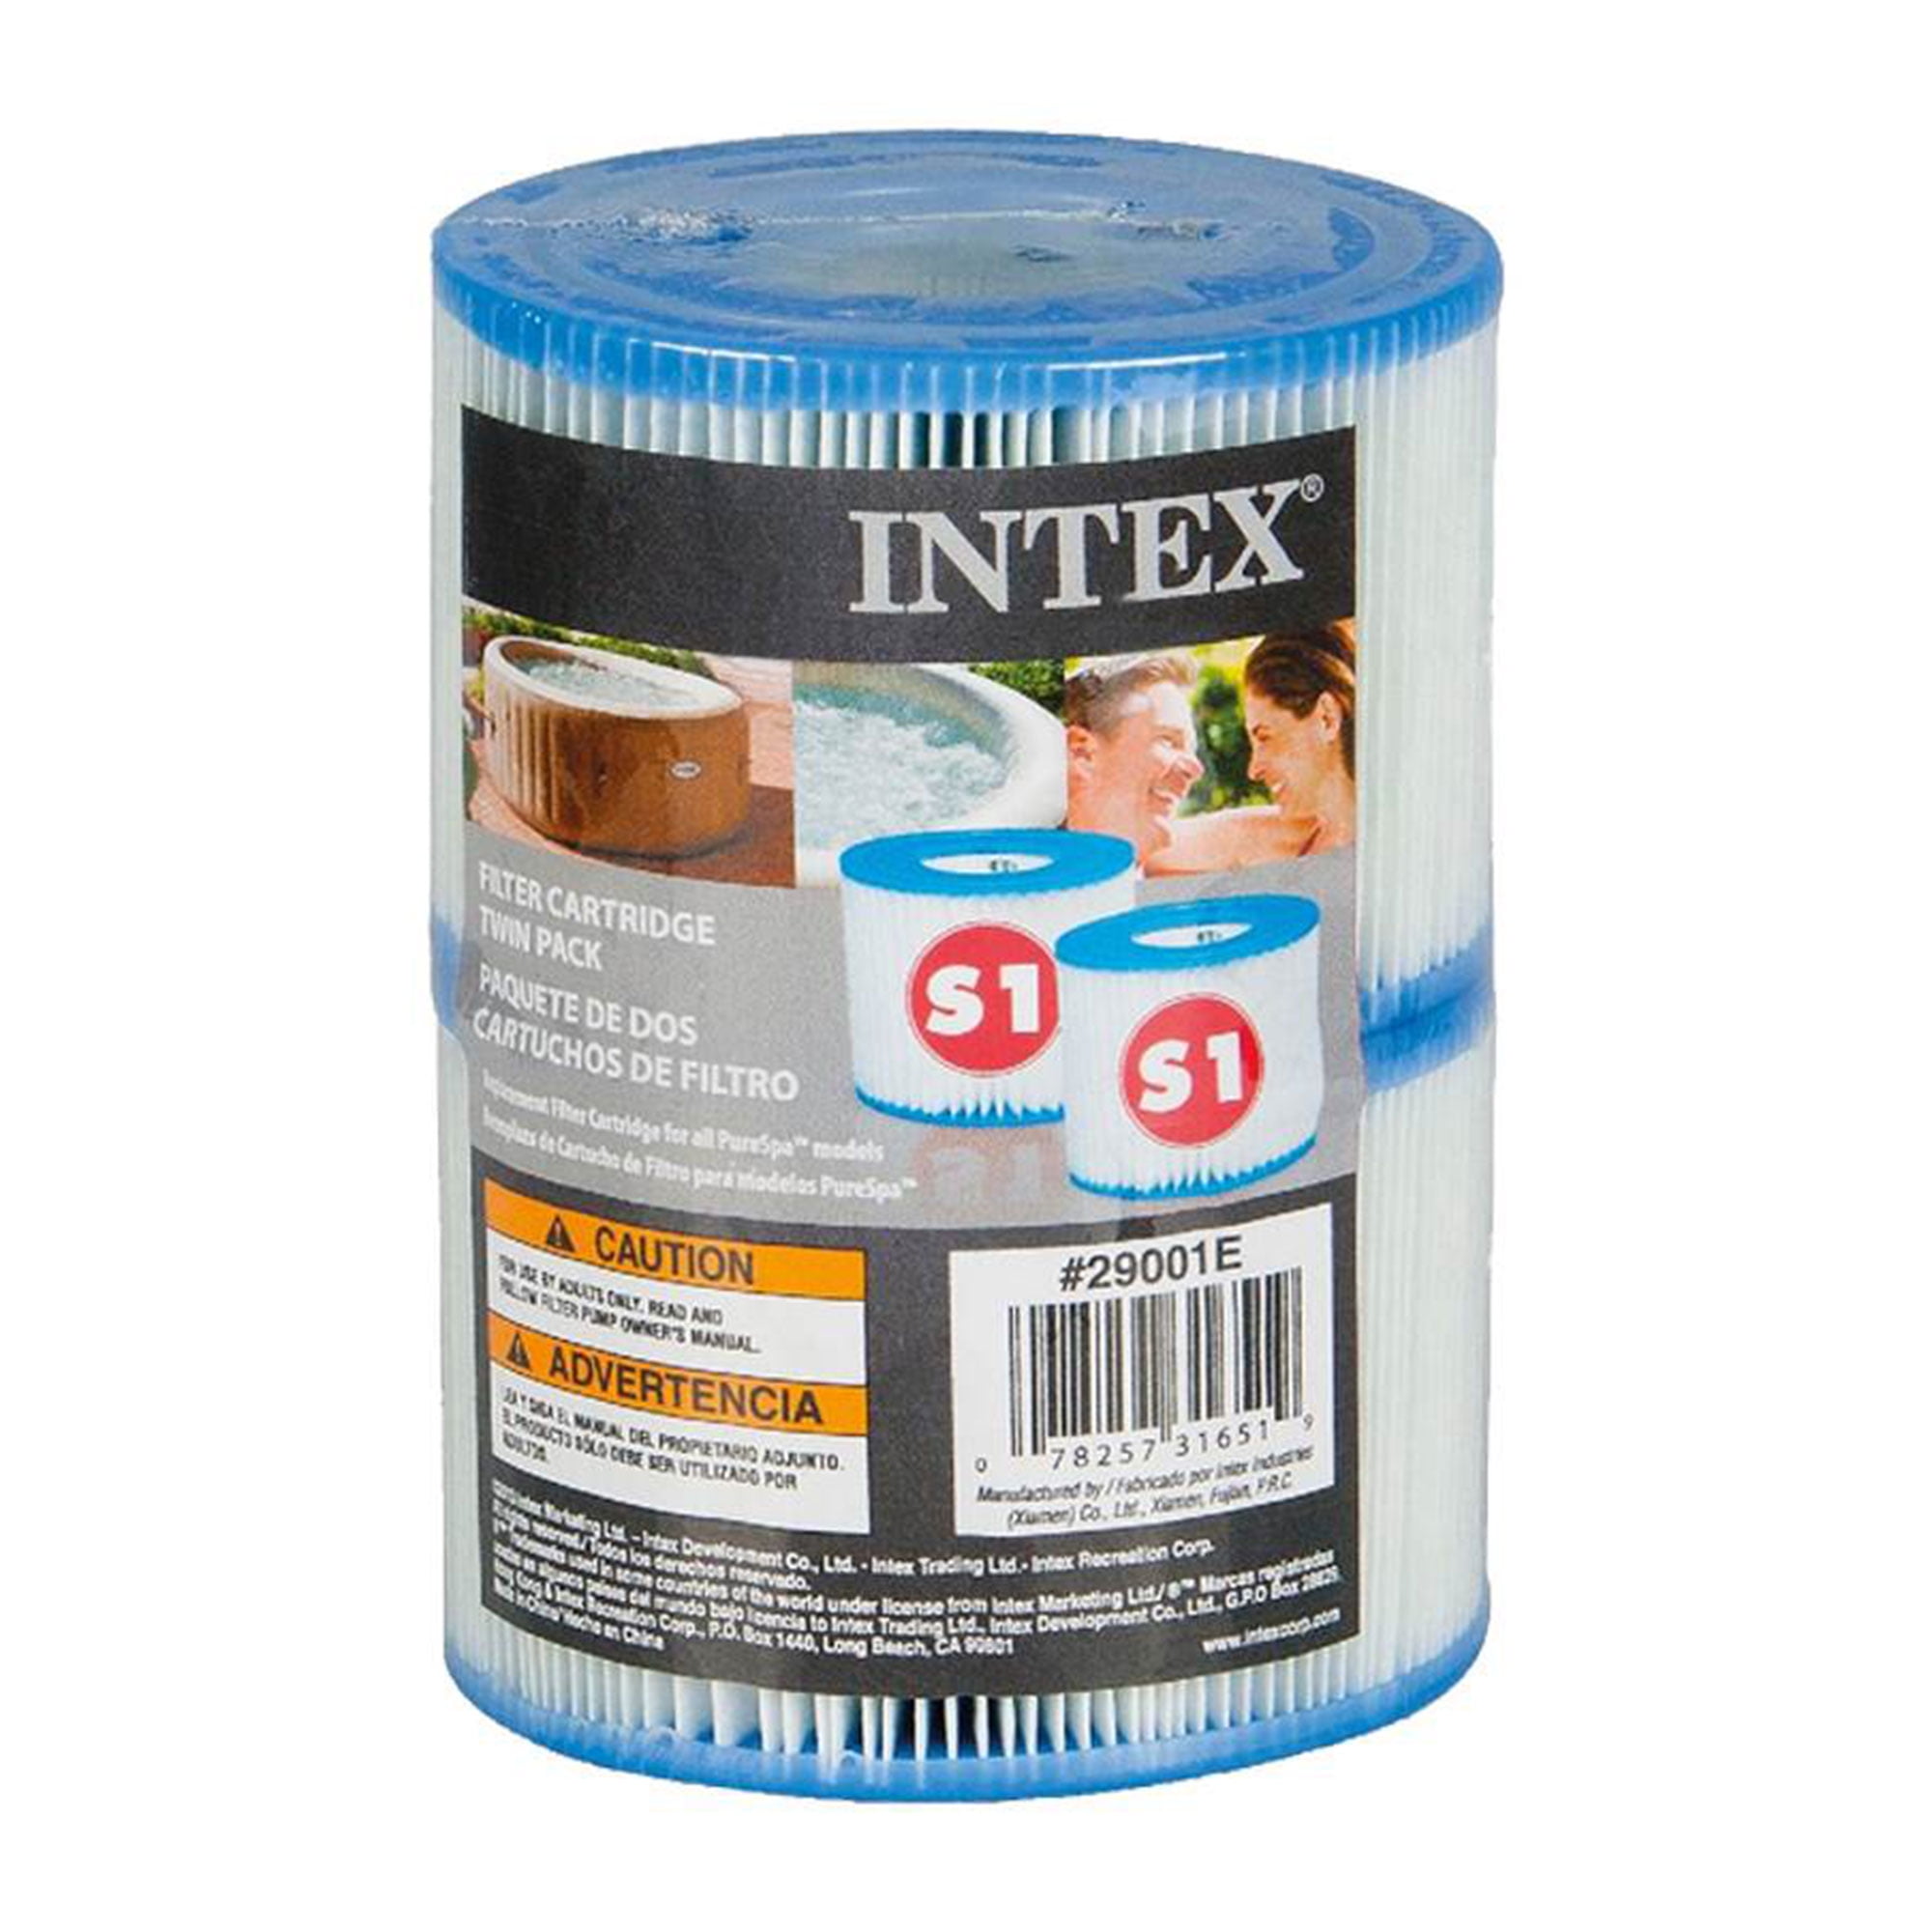 Intex 29003 - Filterkartusche Filter für Pool, Typ A, 3er Pack